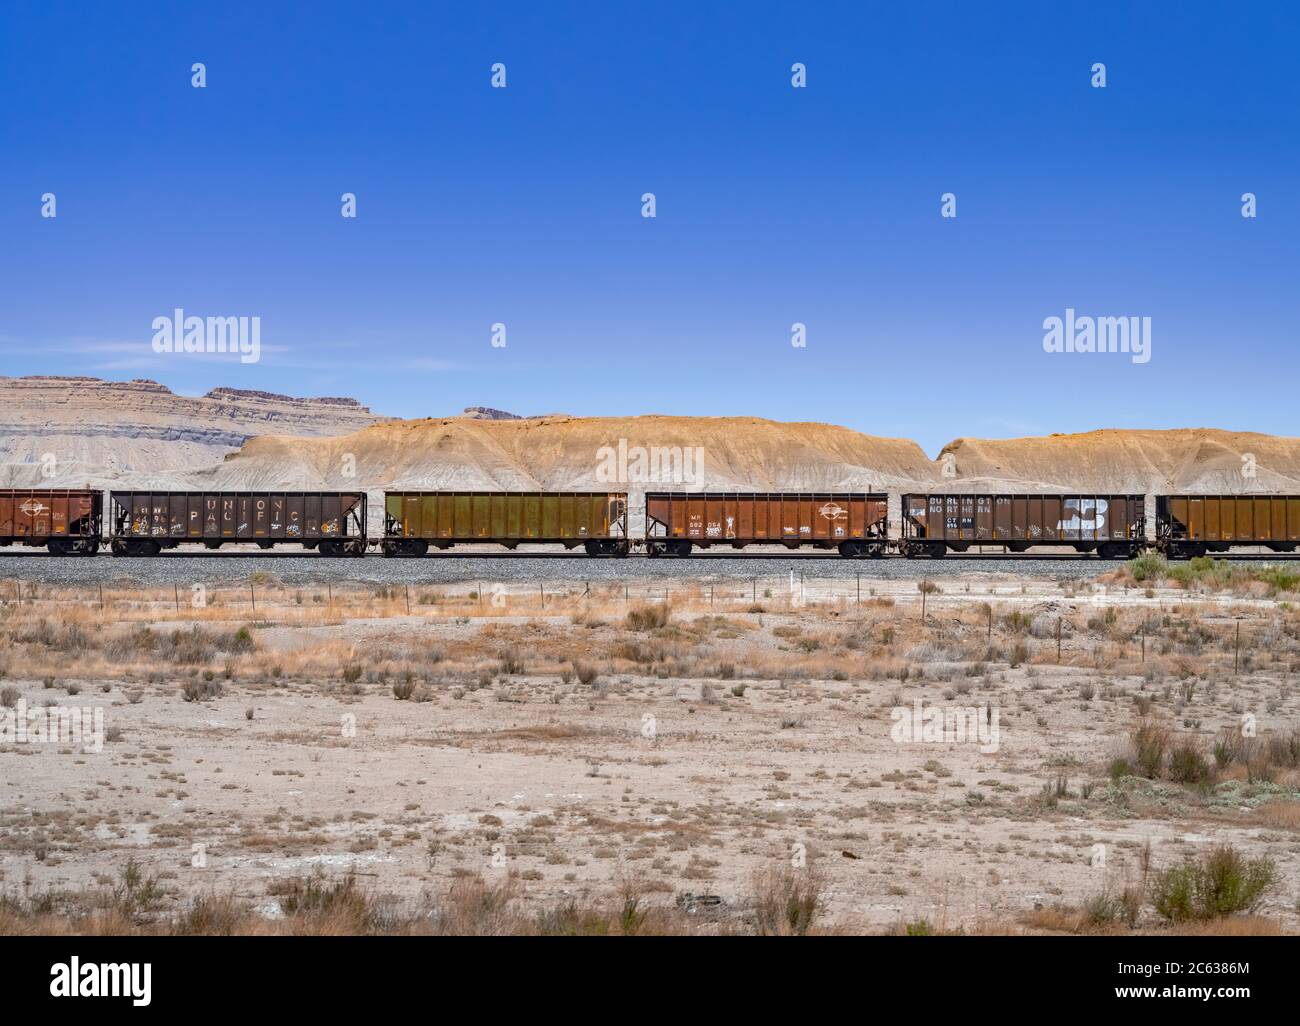 Ligne de wagons, route 191 Wyoming, États-Unis Banque D'Images